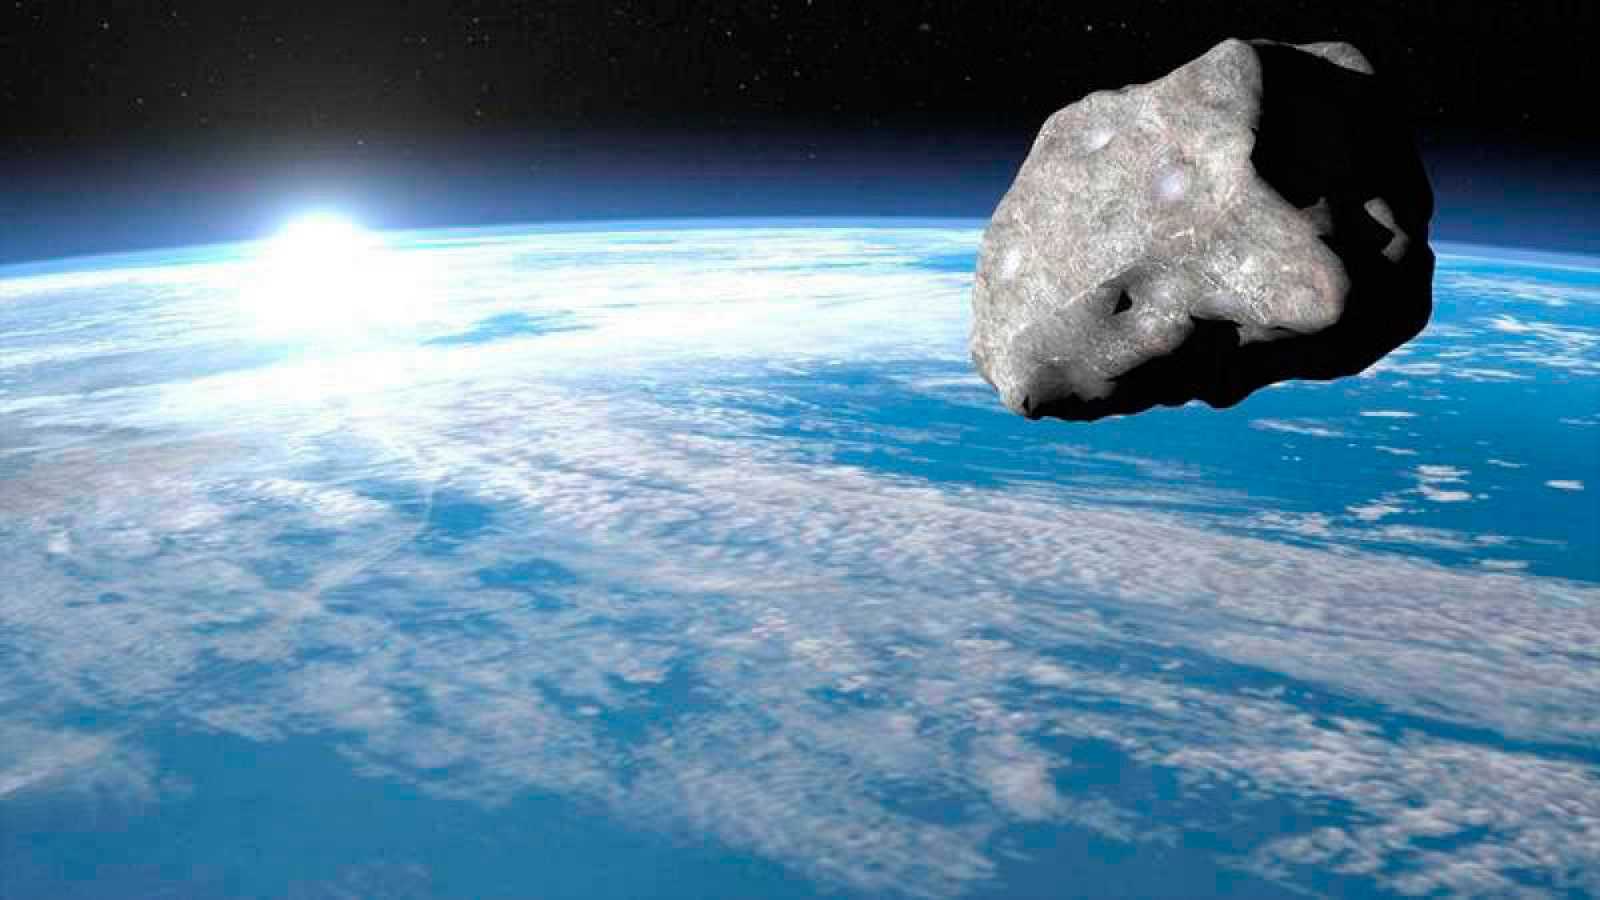 NASA: Enorme asteroide circa 30 metri pronto all'impatto sulla terra, ecco tutti i dettagli. Video